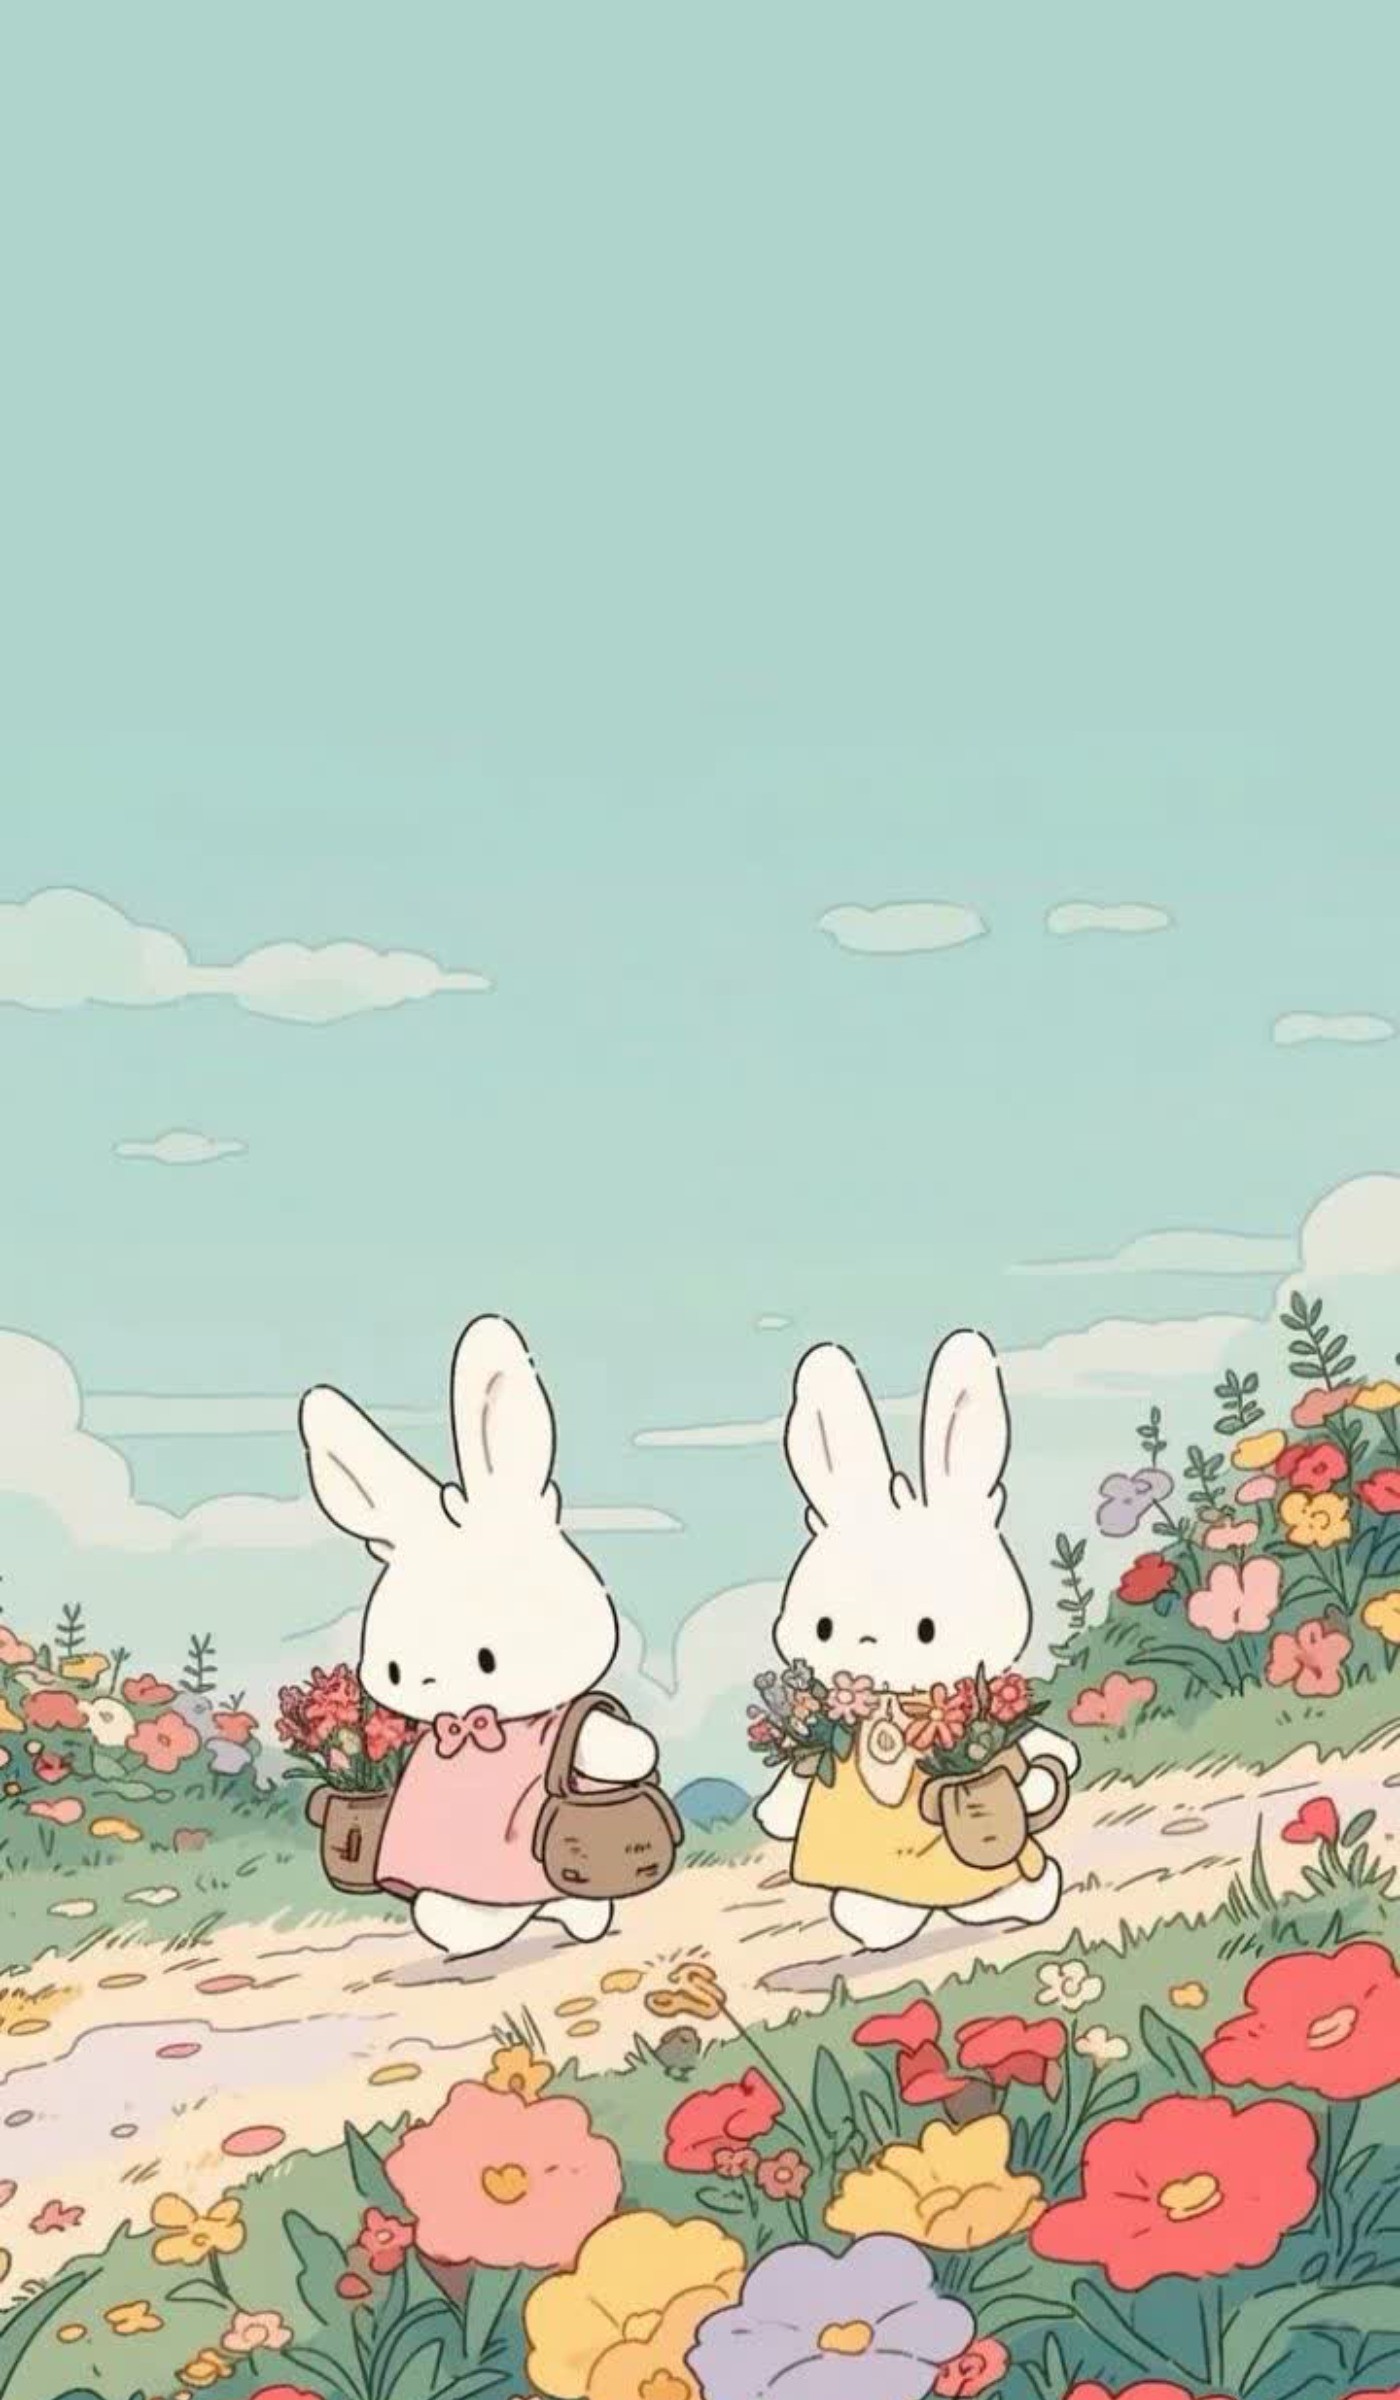 والپیپر کیوان|خرگوش|والپیپر خرگوش کیوت